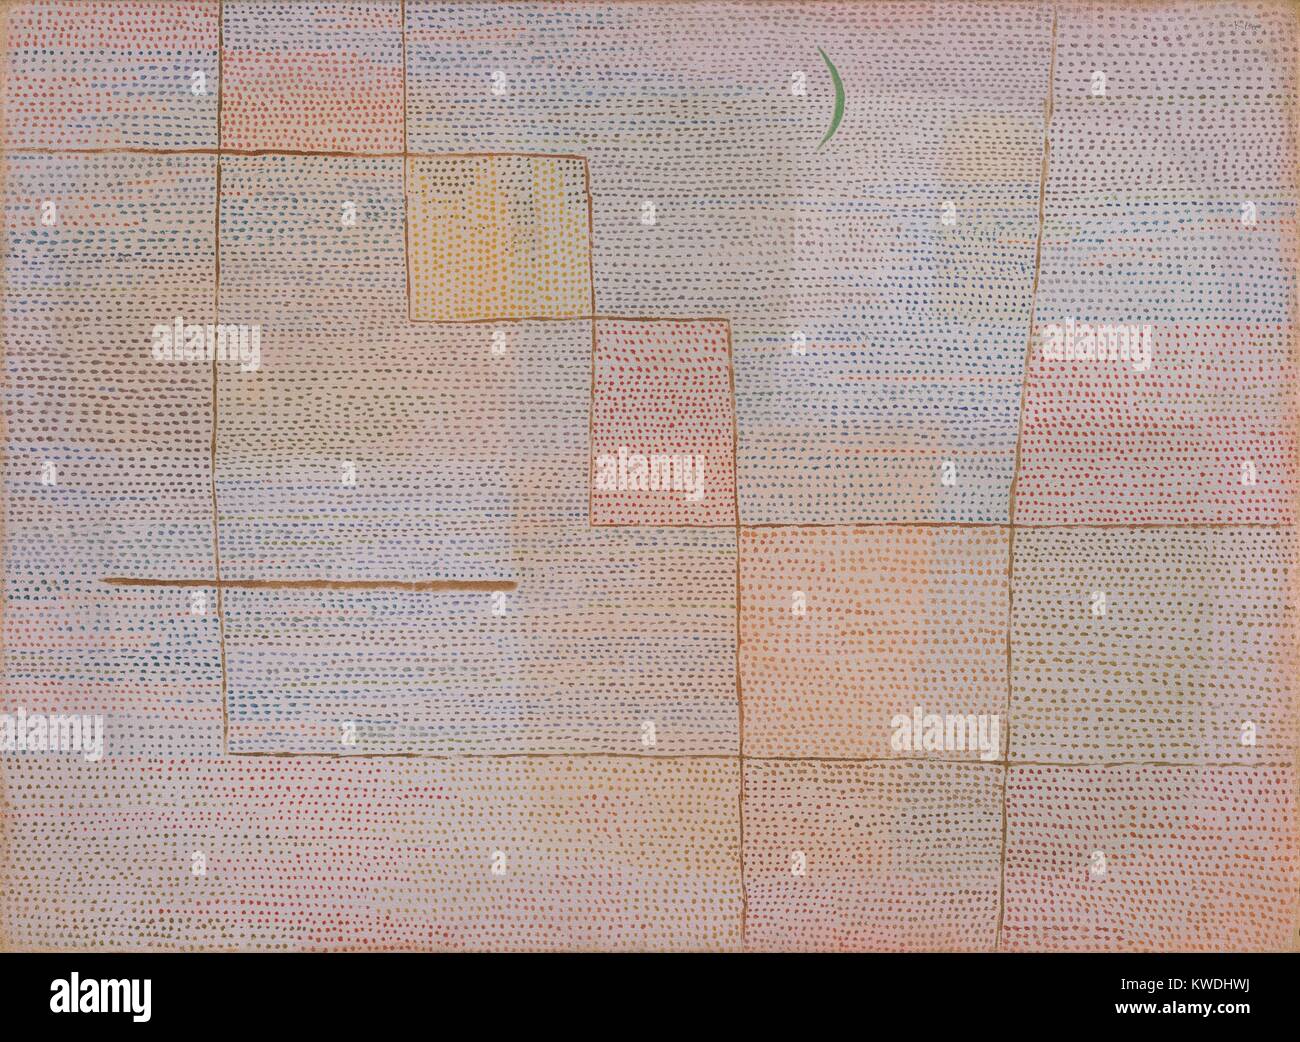 Aclaración, por Paul Klee, 1932, Swiss pintura, óleo sobre lienzo. Klee divide la tierra en zonas de buff y grises y, a continuación, superpone líneas marrones, y cubrió la superficie con filas horizontales de miles de diminutos puntos de color. La media luna verde evoca la Luna, estableciendo una tensión entre la abstracción y la representación simbólica de este elemento (BSLOC 2017 7 56) Foto de stock